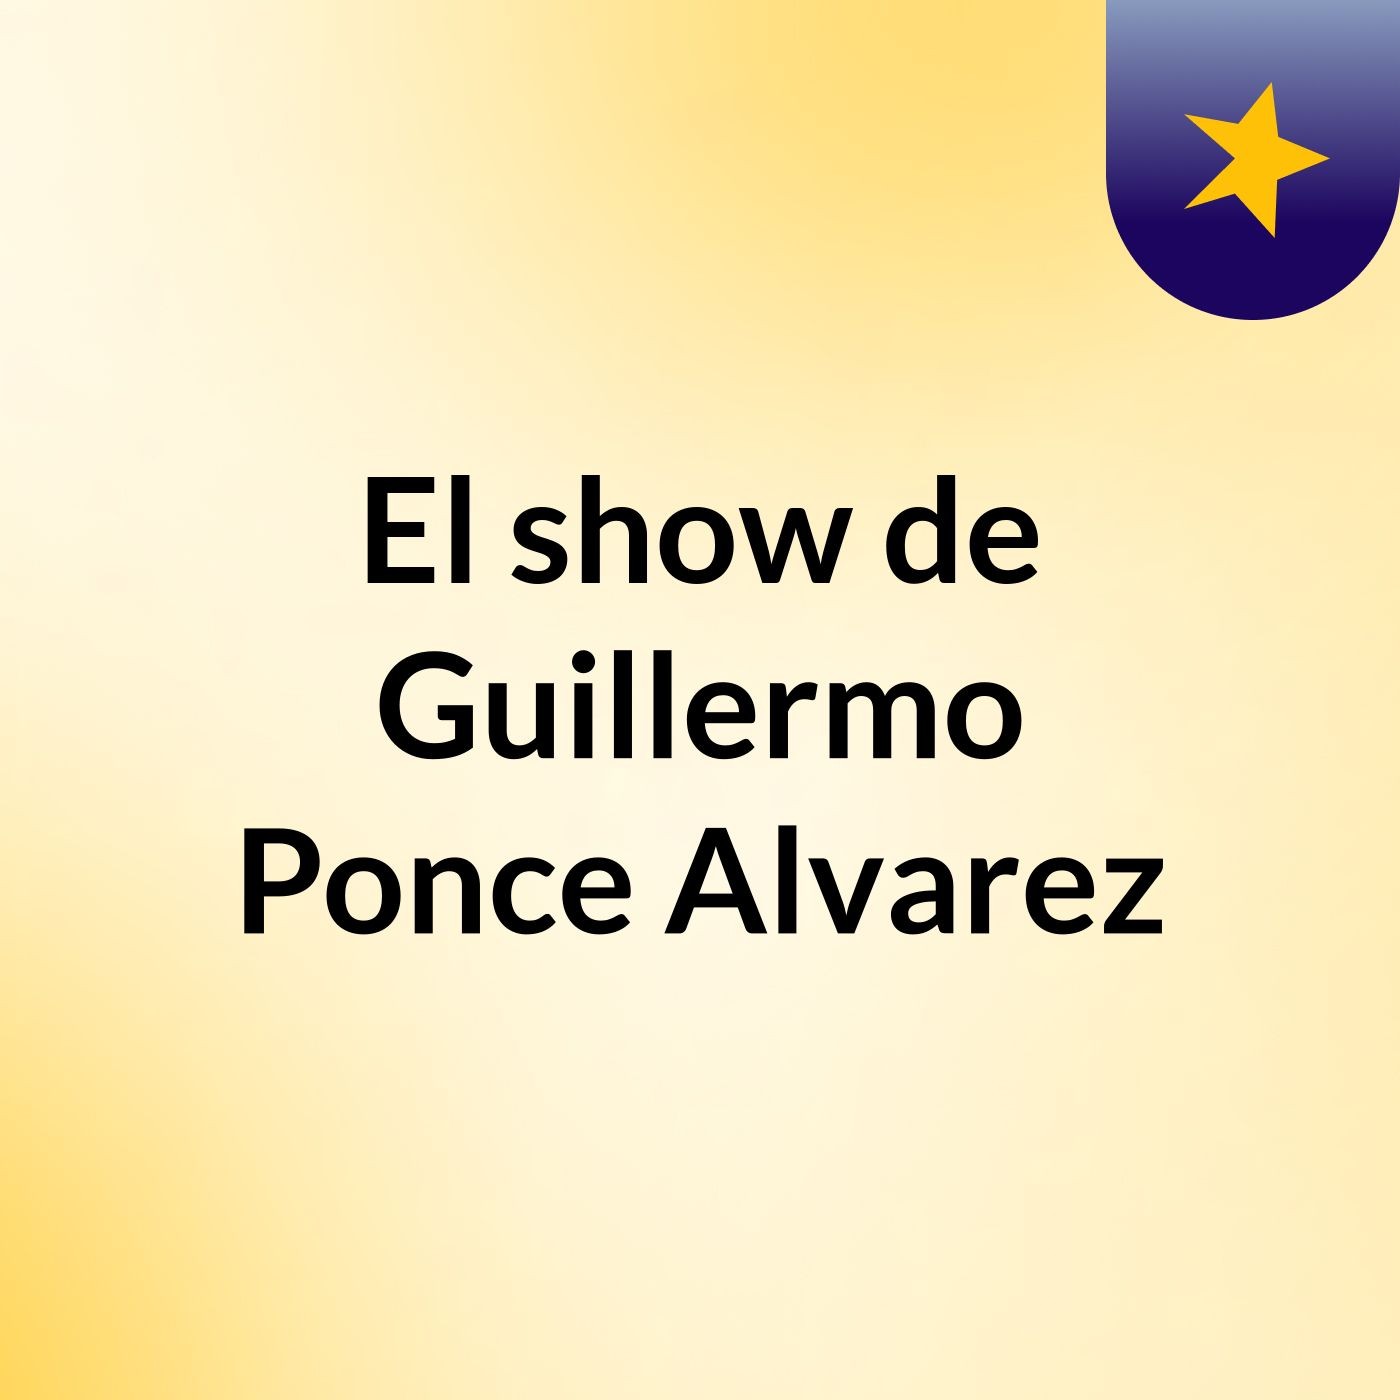 El show de Guillermo Ponce Alvarez